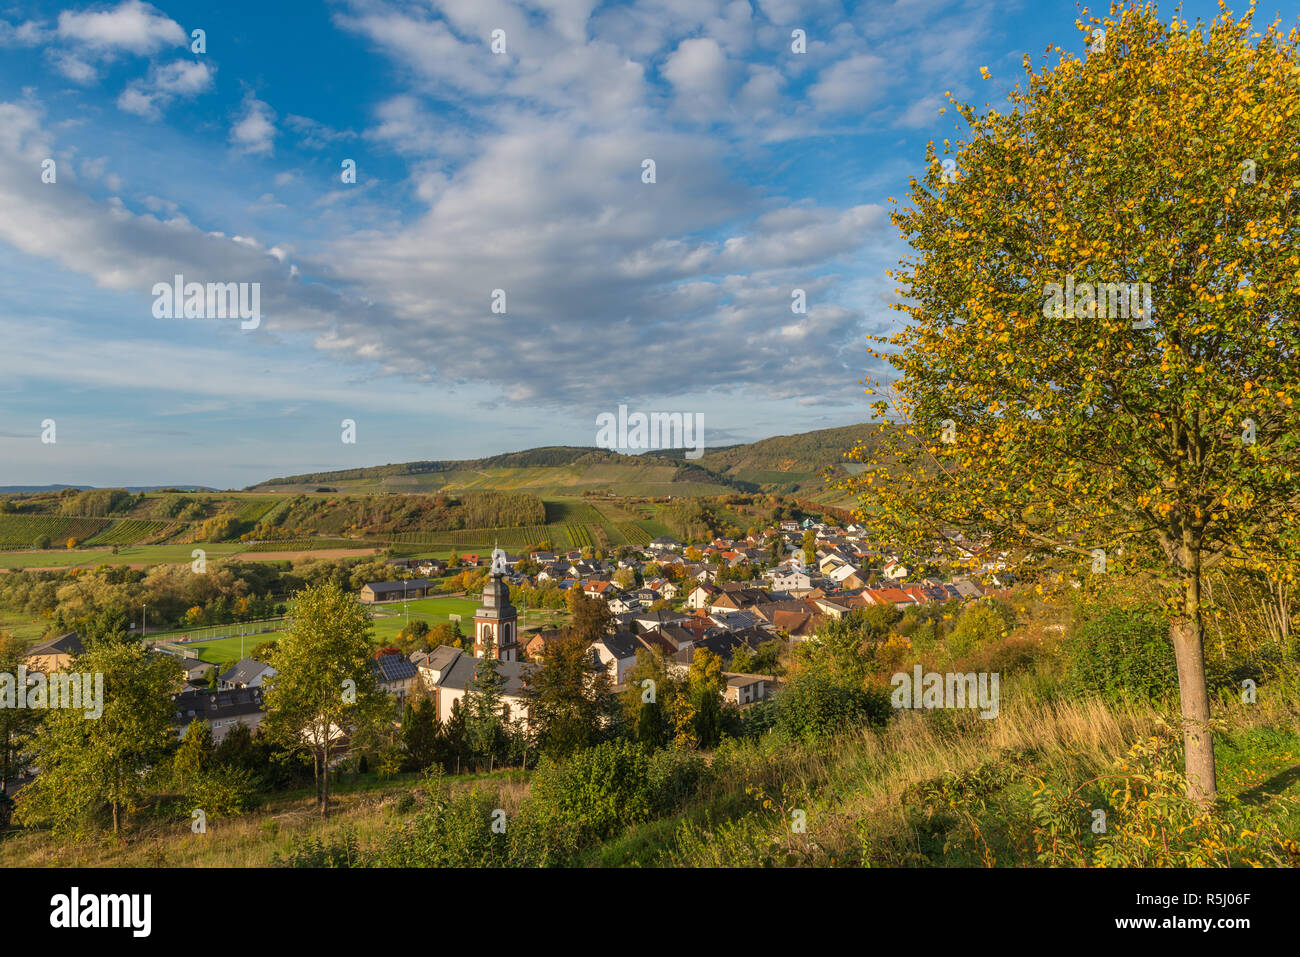 Le village de Irsch, Saarburg, au milieu des vignes et le paysage vallonné de Rhineland-Palantine, Germany, Europe Banque D'Images